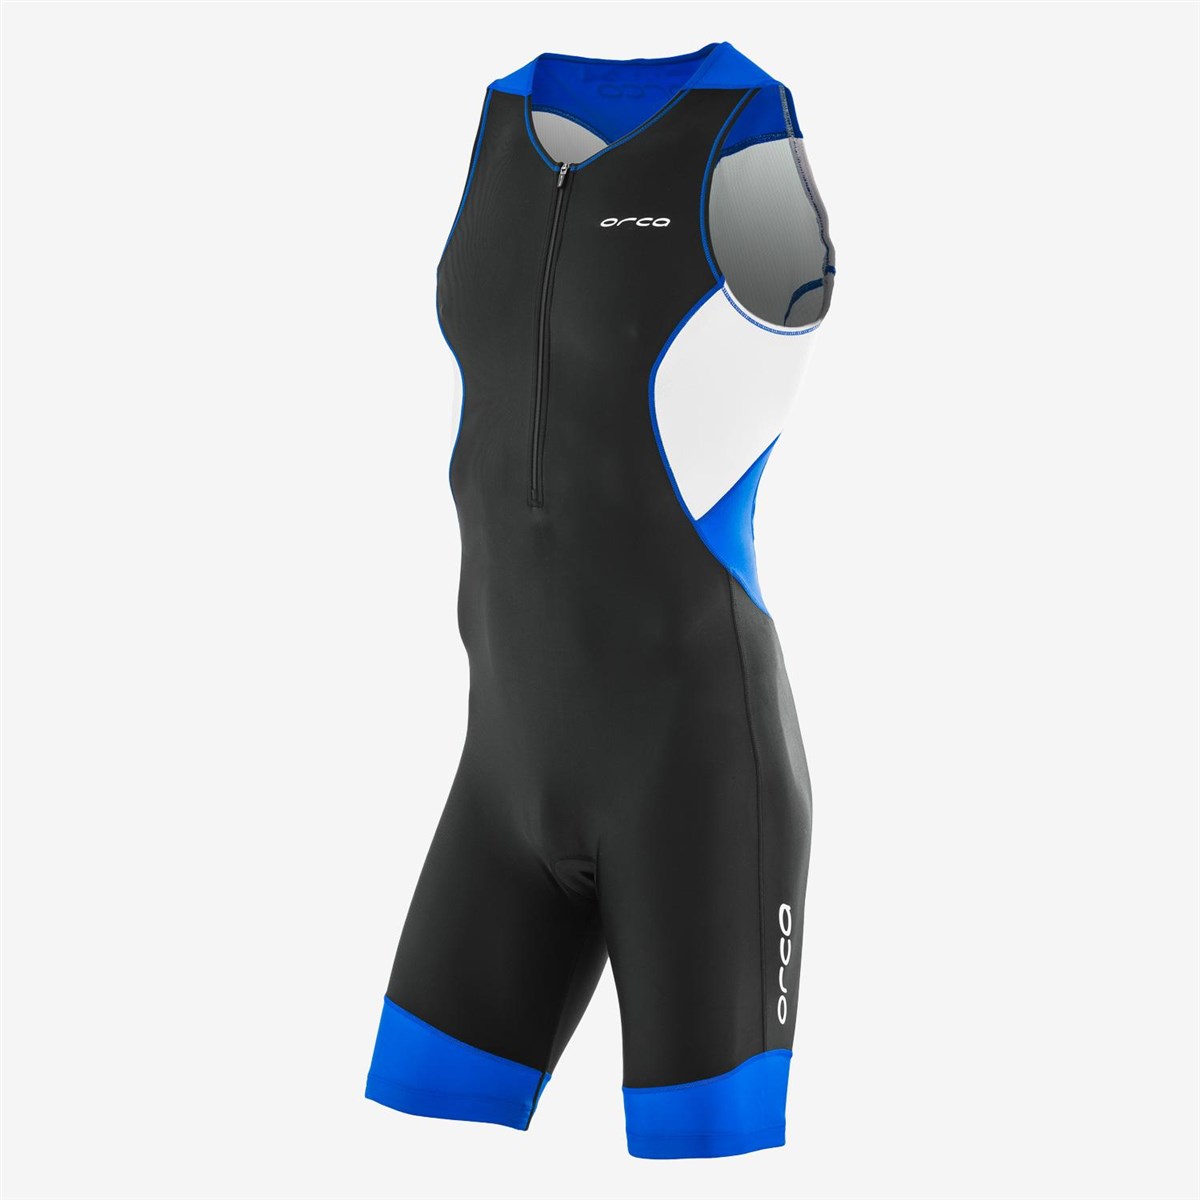 Orca Core Race Suit product image